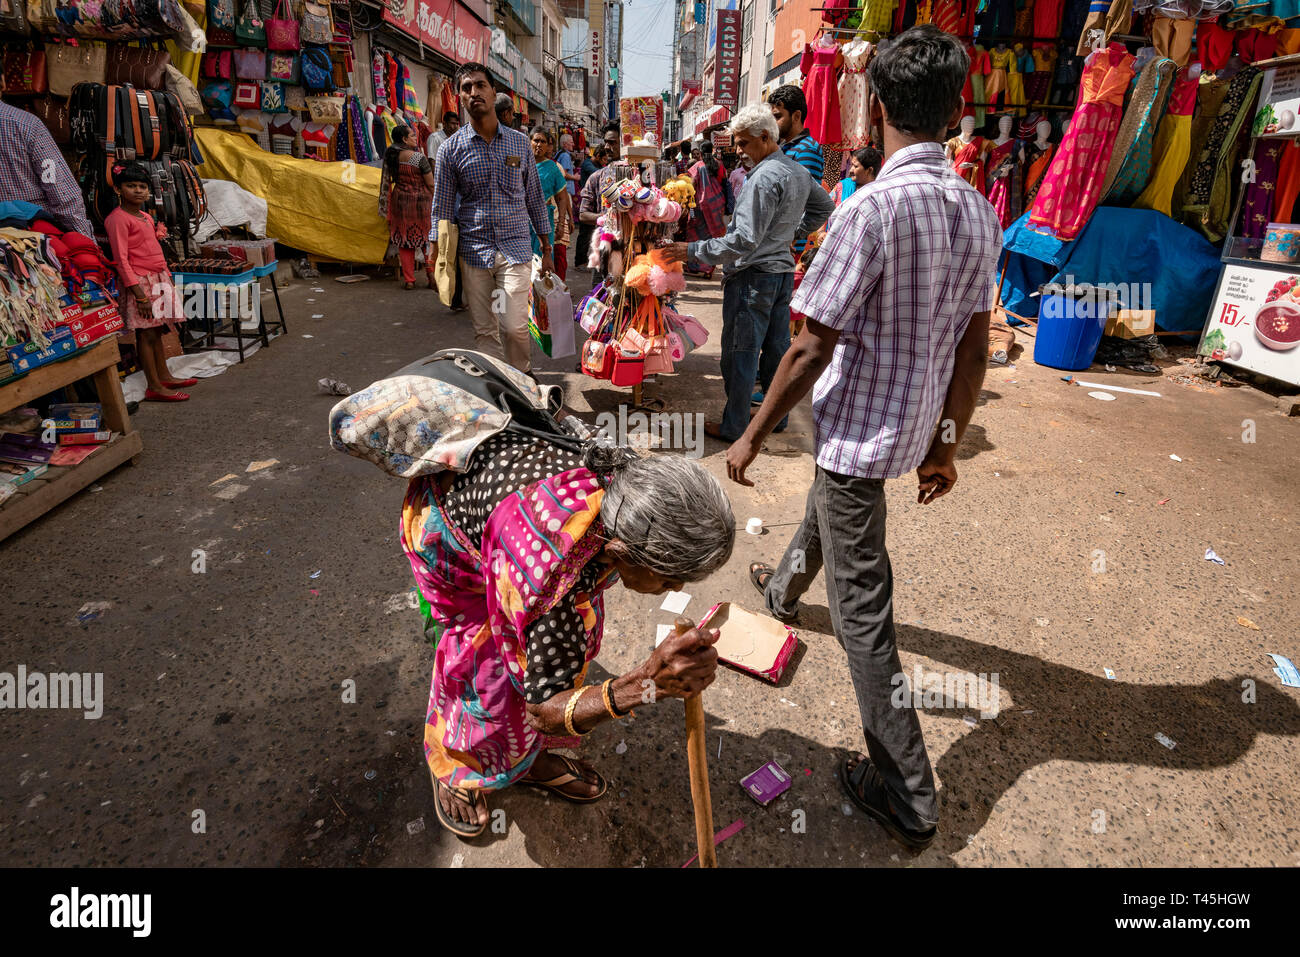 Streetview horizontale d'une vieille dame mendier dans un quartier commerçant animé, en Inde. Banque D'Images